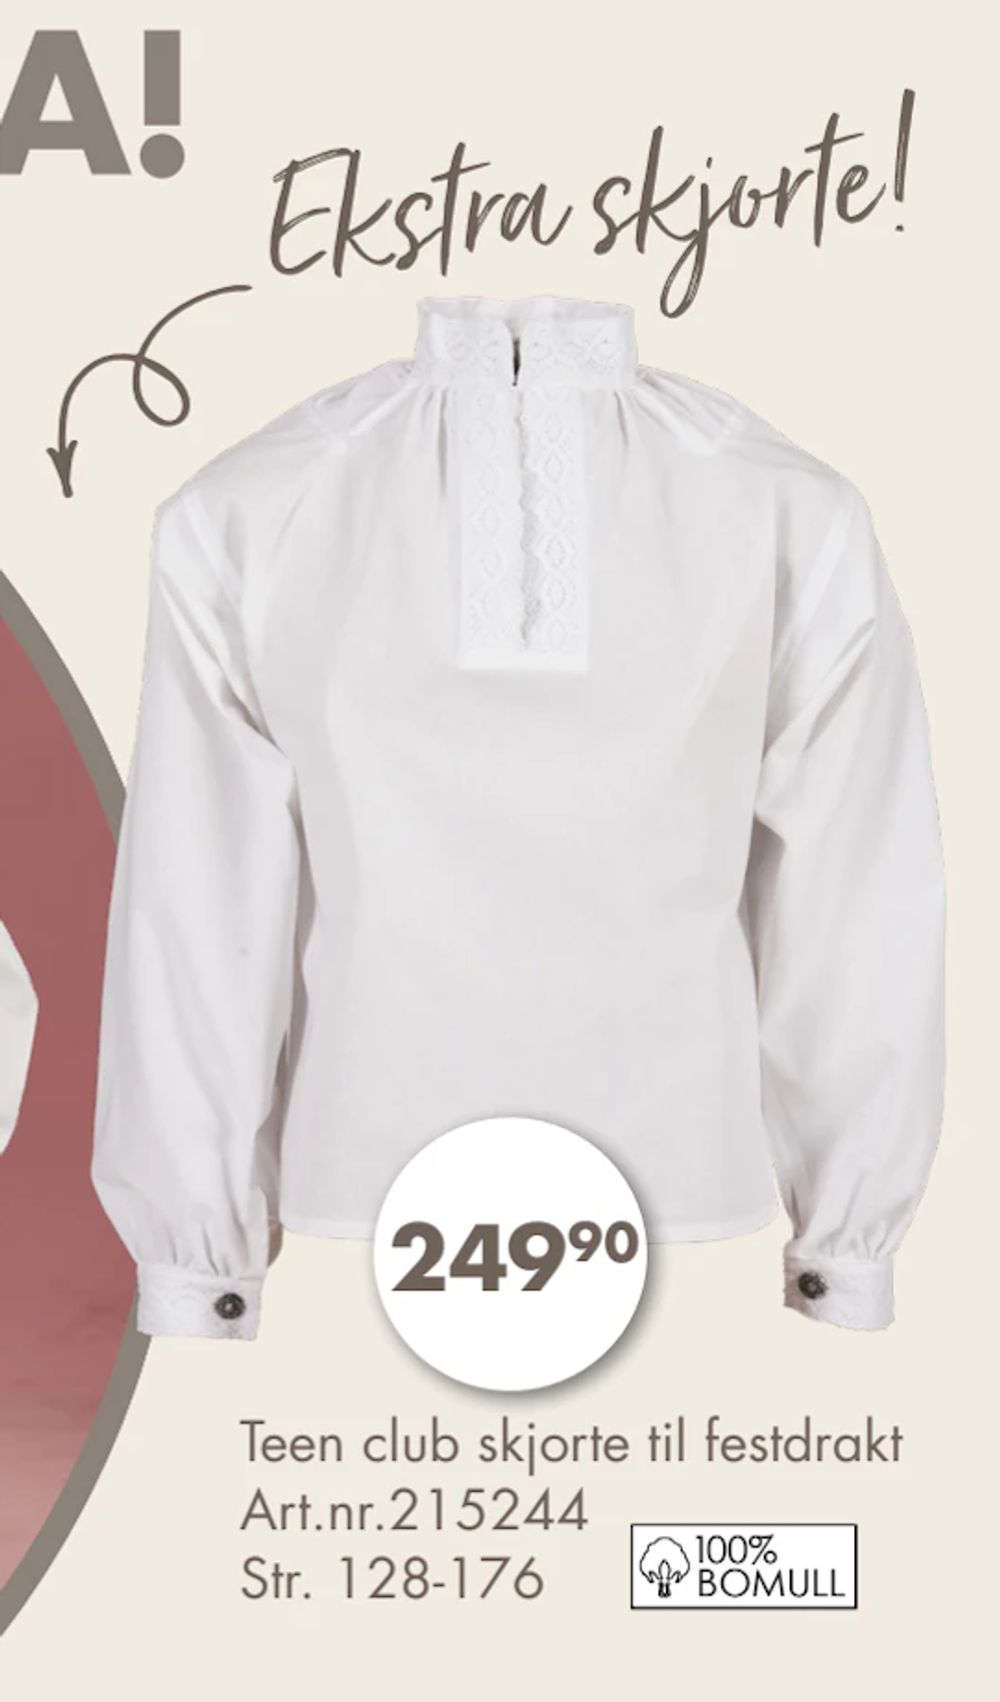 Tilbud på Teen club skjorte til festdrakt fra Spar Kjøp til 249,90 kr